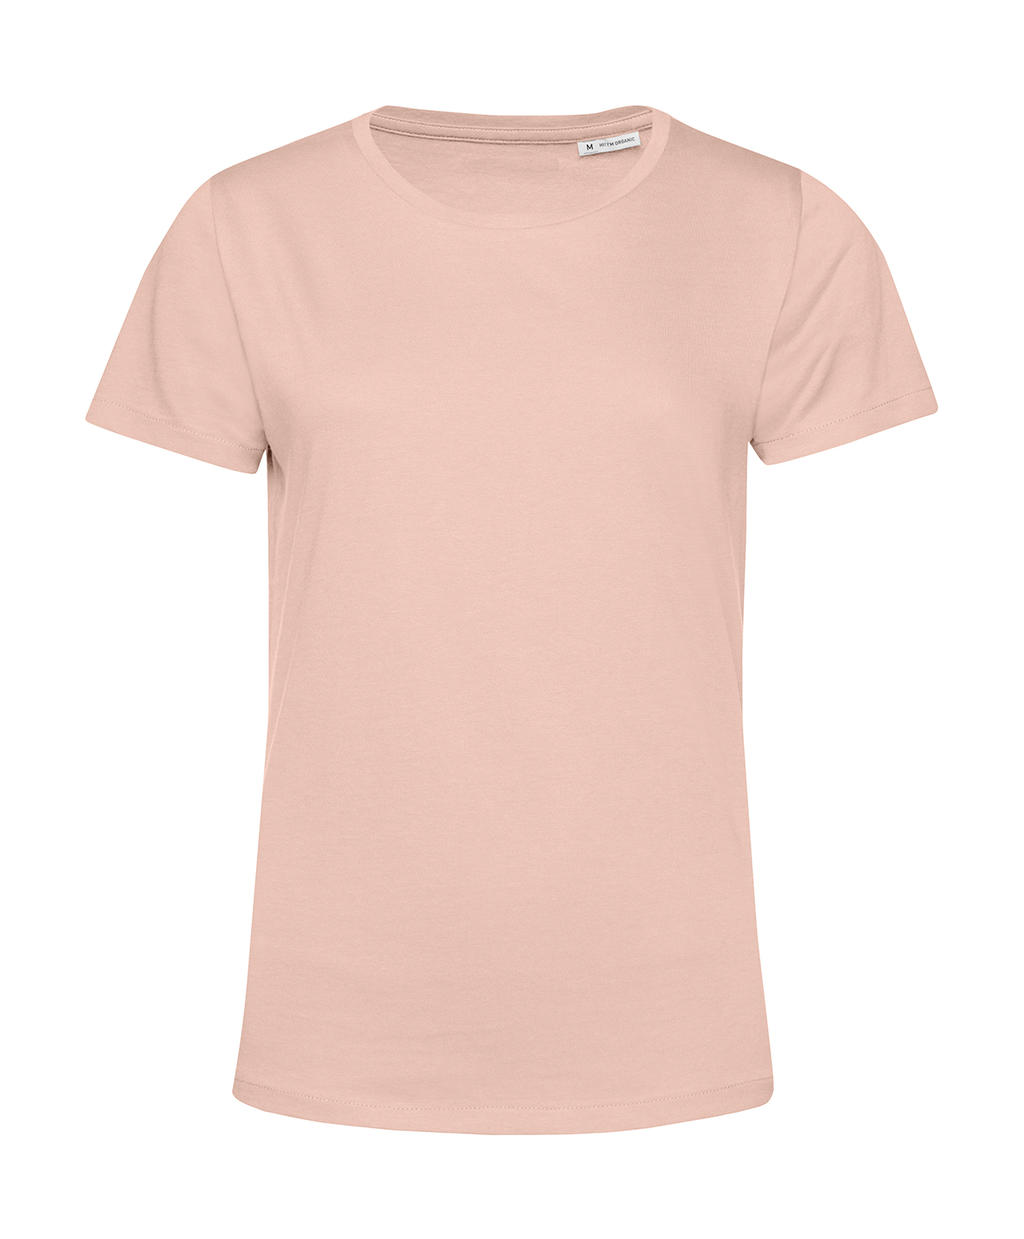 Tričko dámské BC Organic Inspire E150 - světle růžové, XL